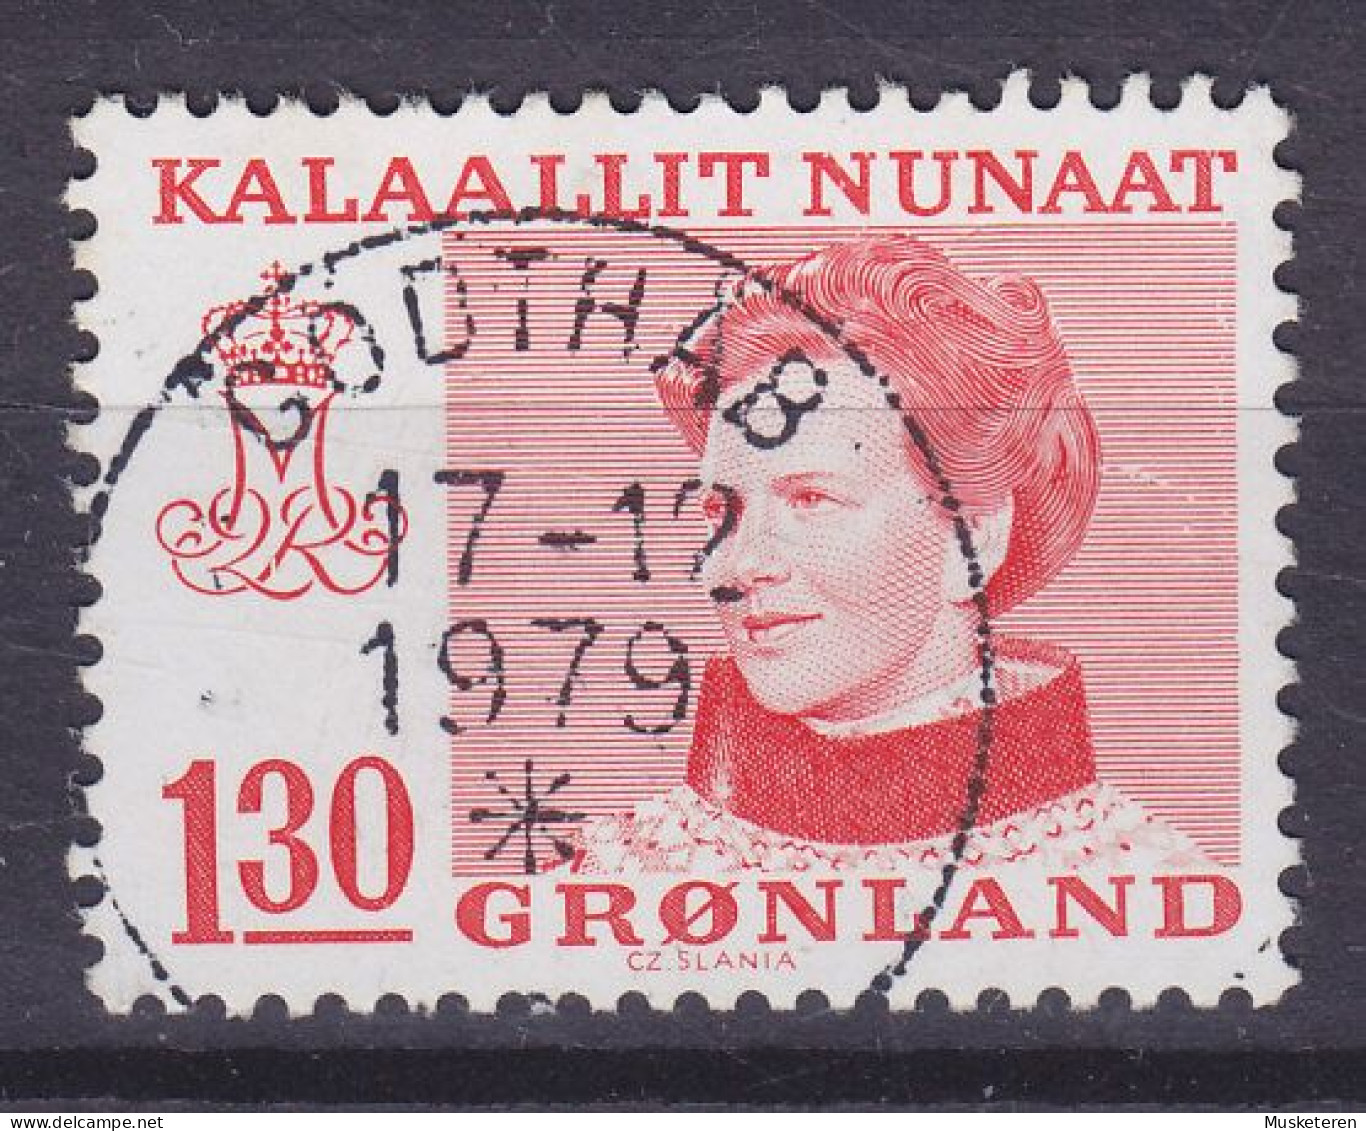 Greenland 1979 Mi. 113, 1.30 (Kr) Queen Margrethe II. (Cz. Slania) Deluxe GODTHÅB Cancel !! - Gebruikt